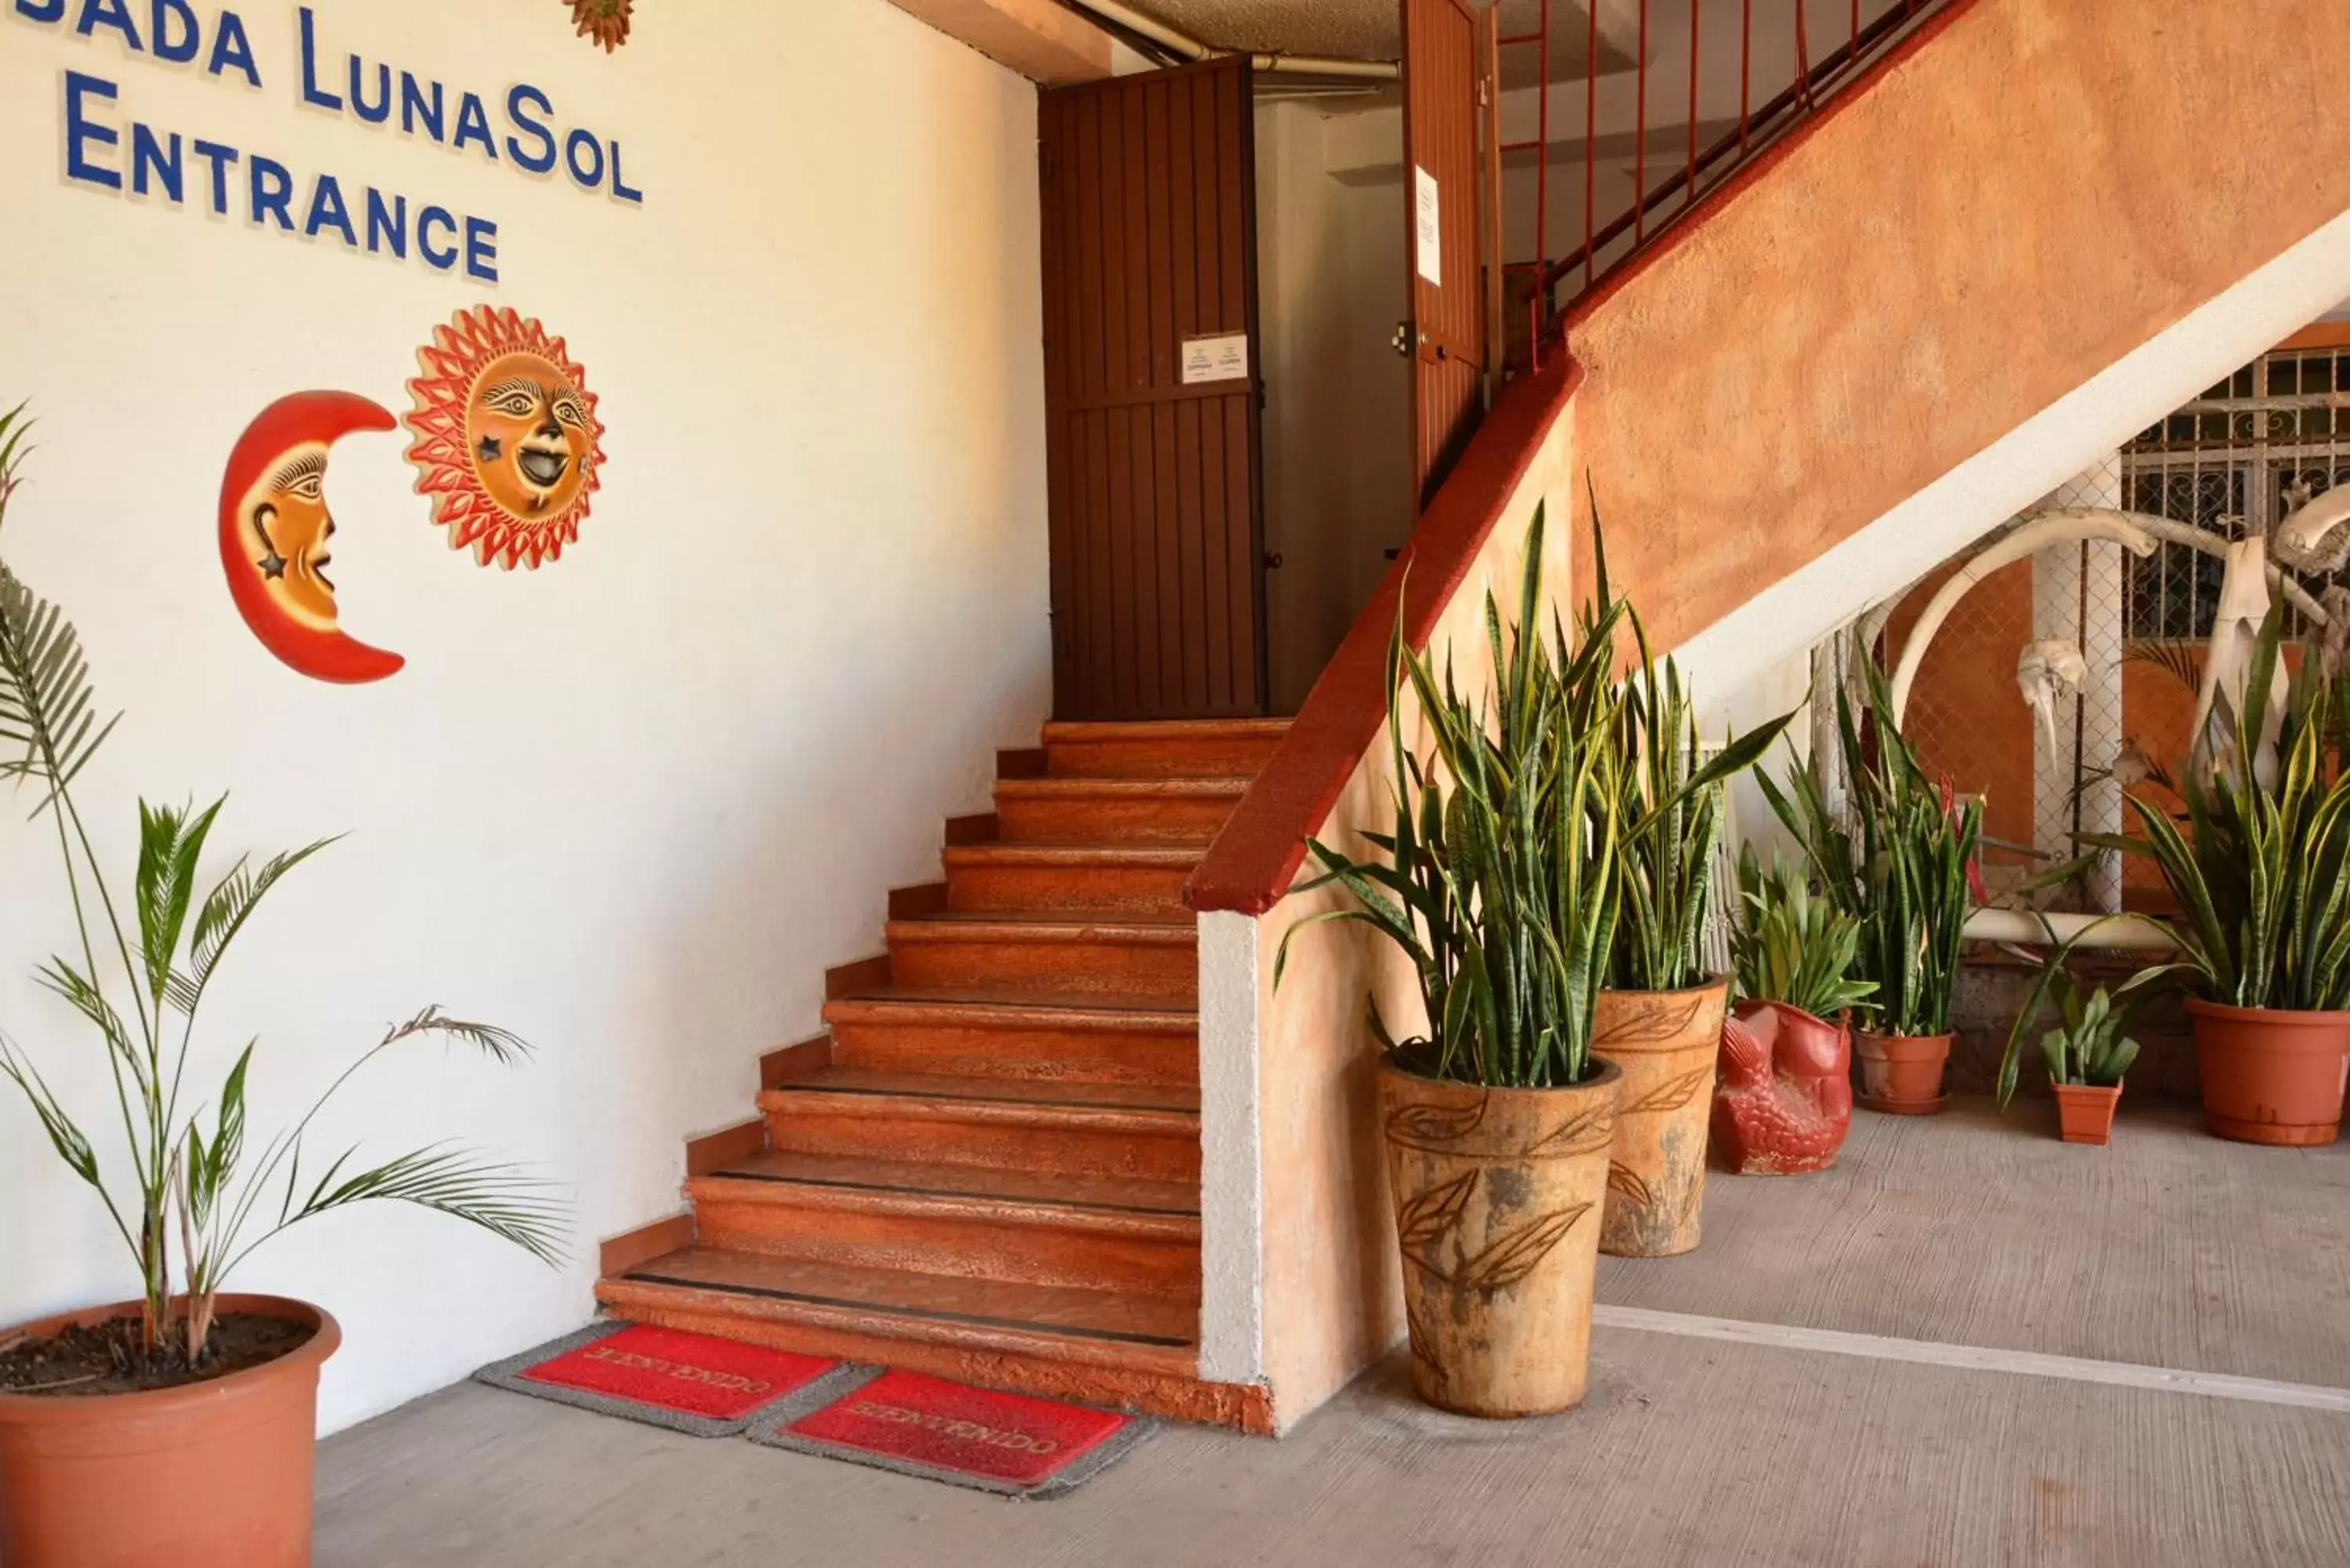 Lobby or reception in Hotel Posada Luna Sol